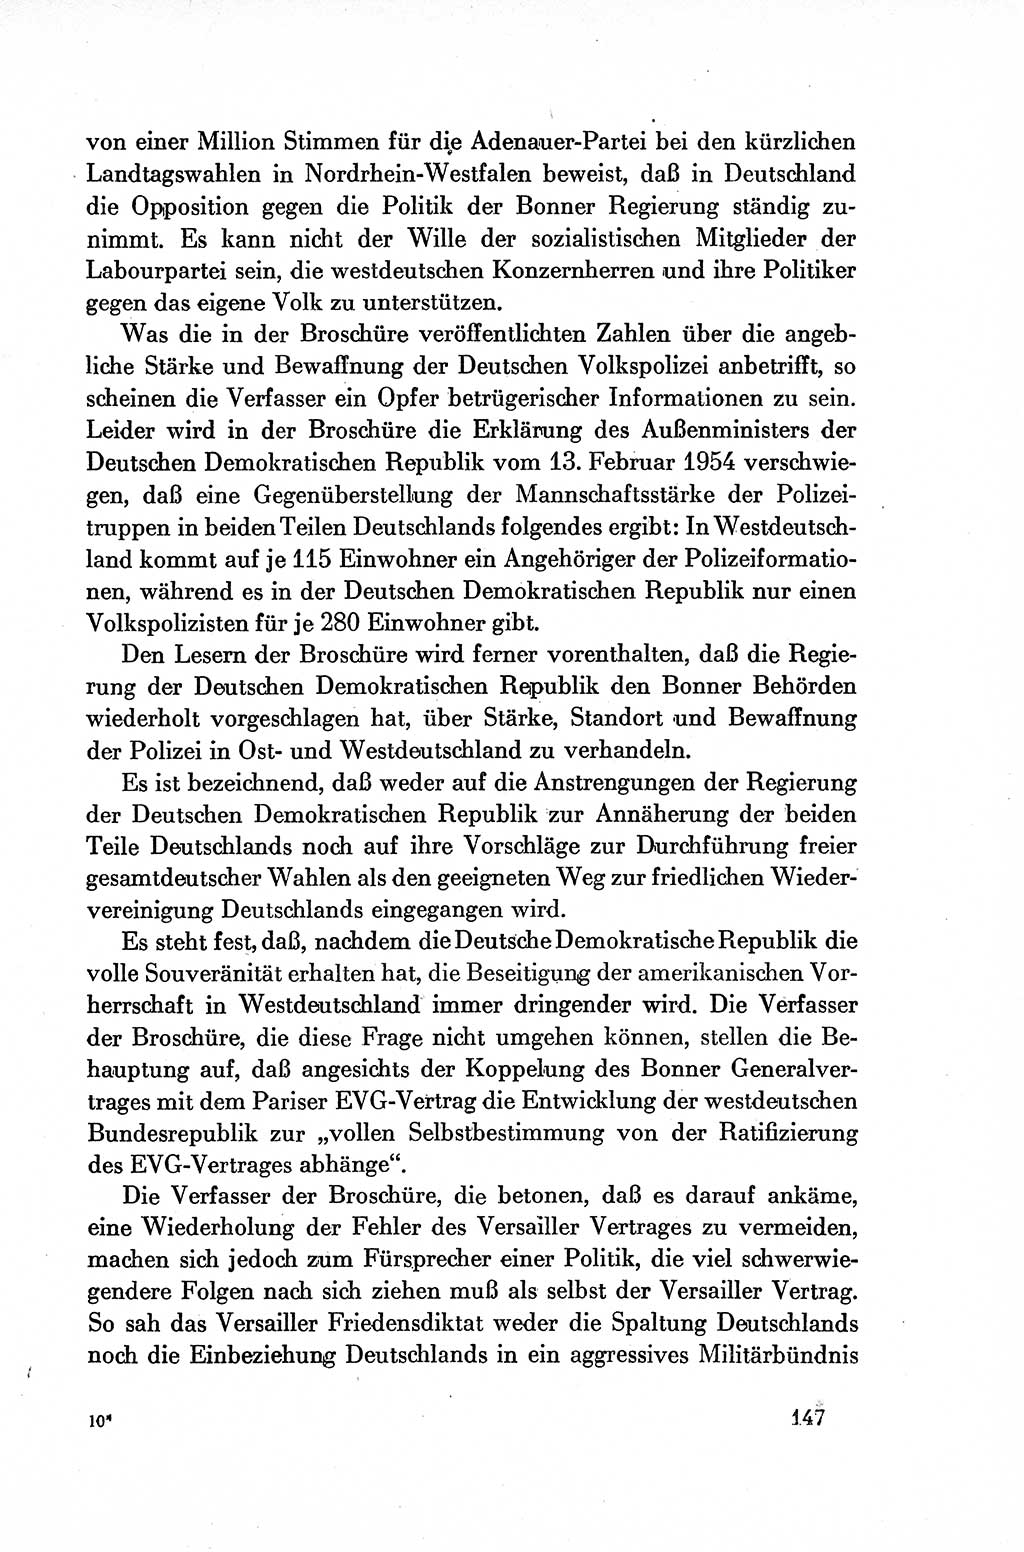 Dokumente der Sozialistischen Einheitspartei Deutschlands (SED) [Deutsche Demokratische Republik (DDR)] 1954-1955, Seite 147 (Dok. SED DDR 1954-1955, S. 147)